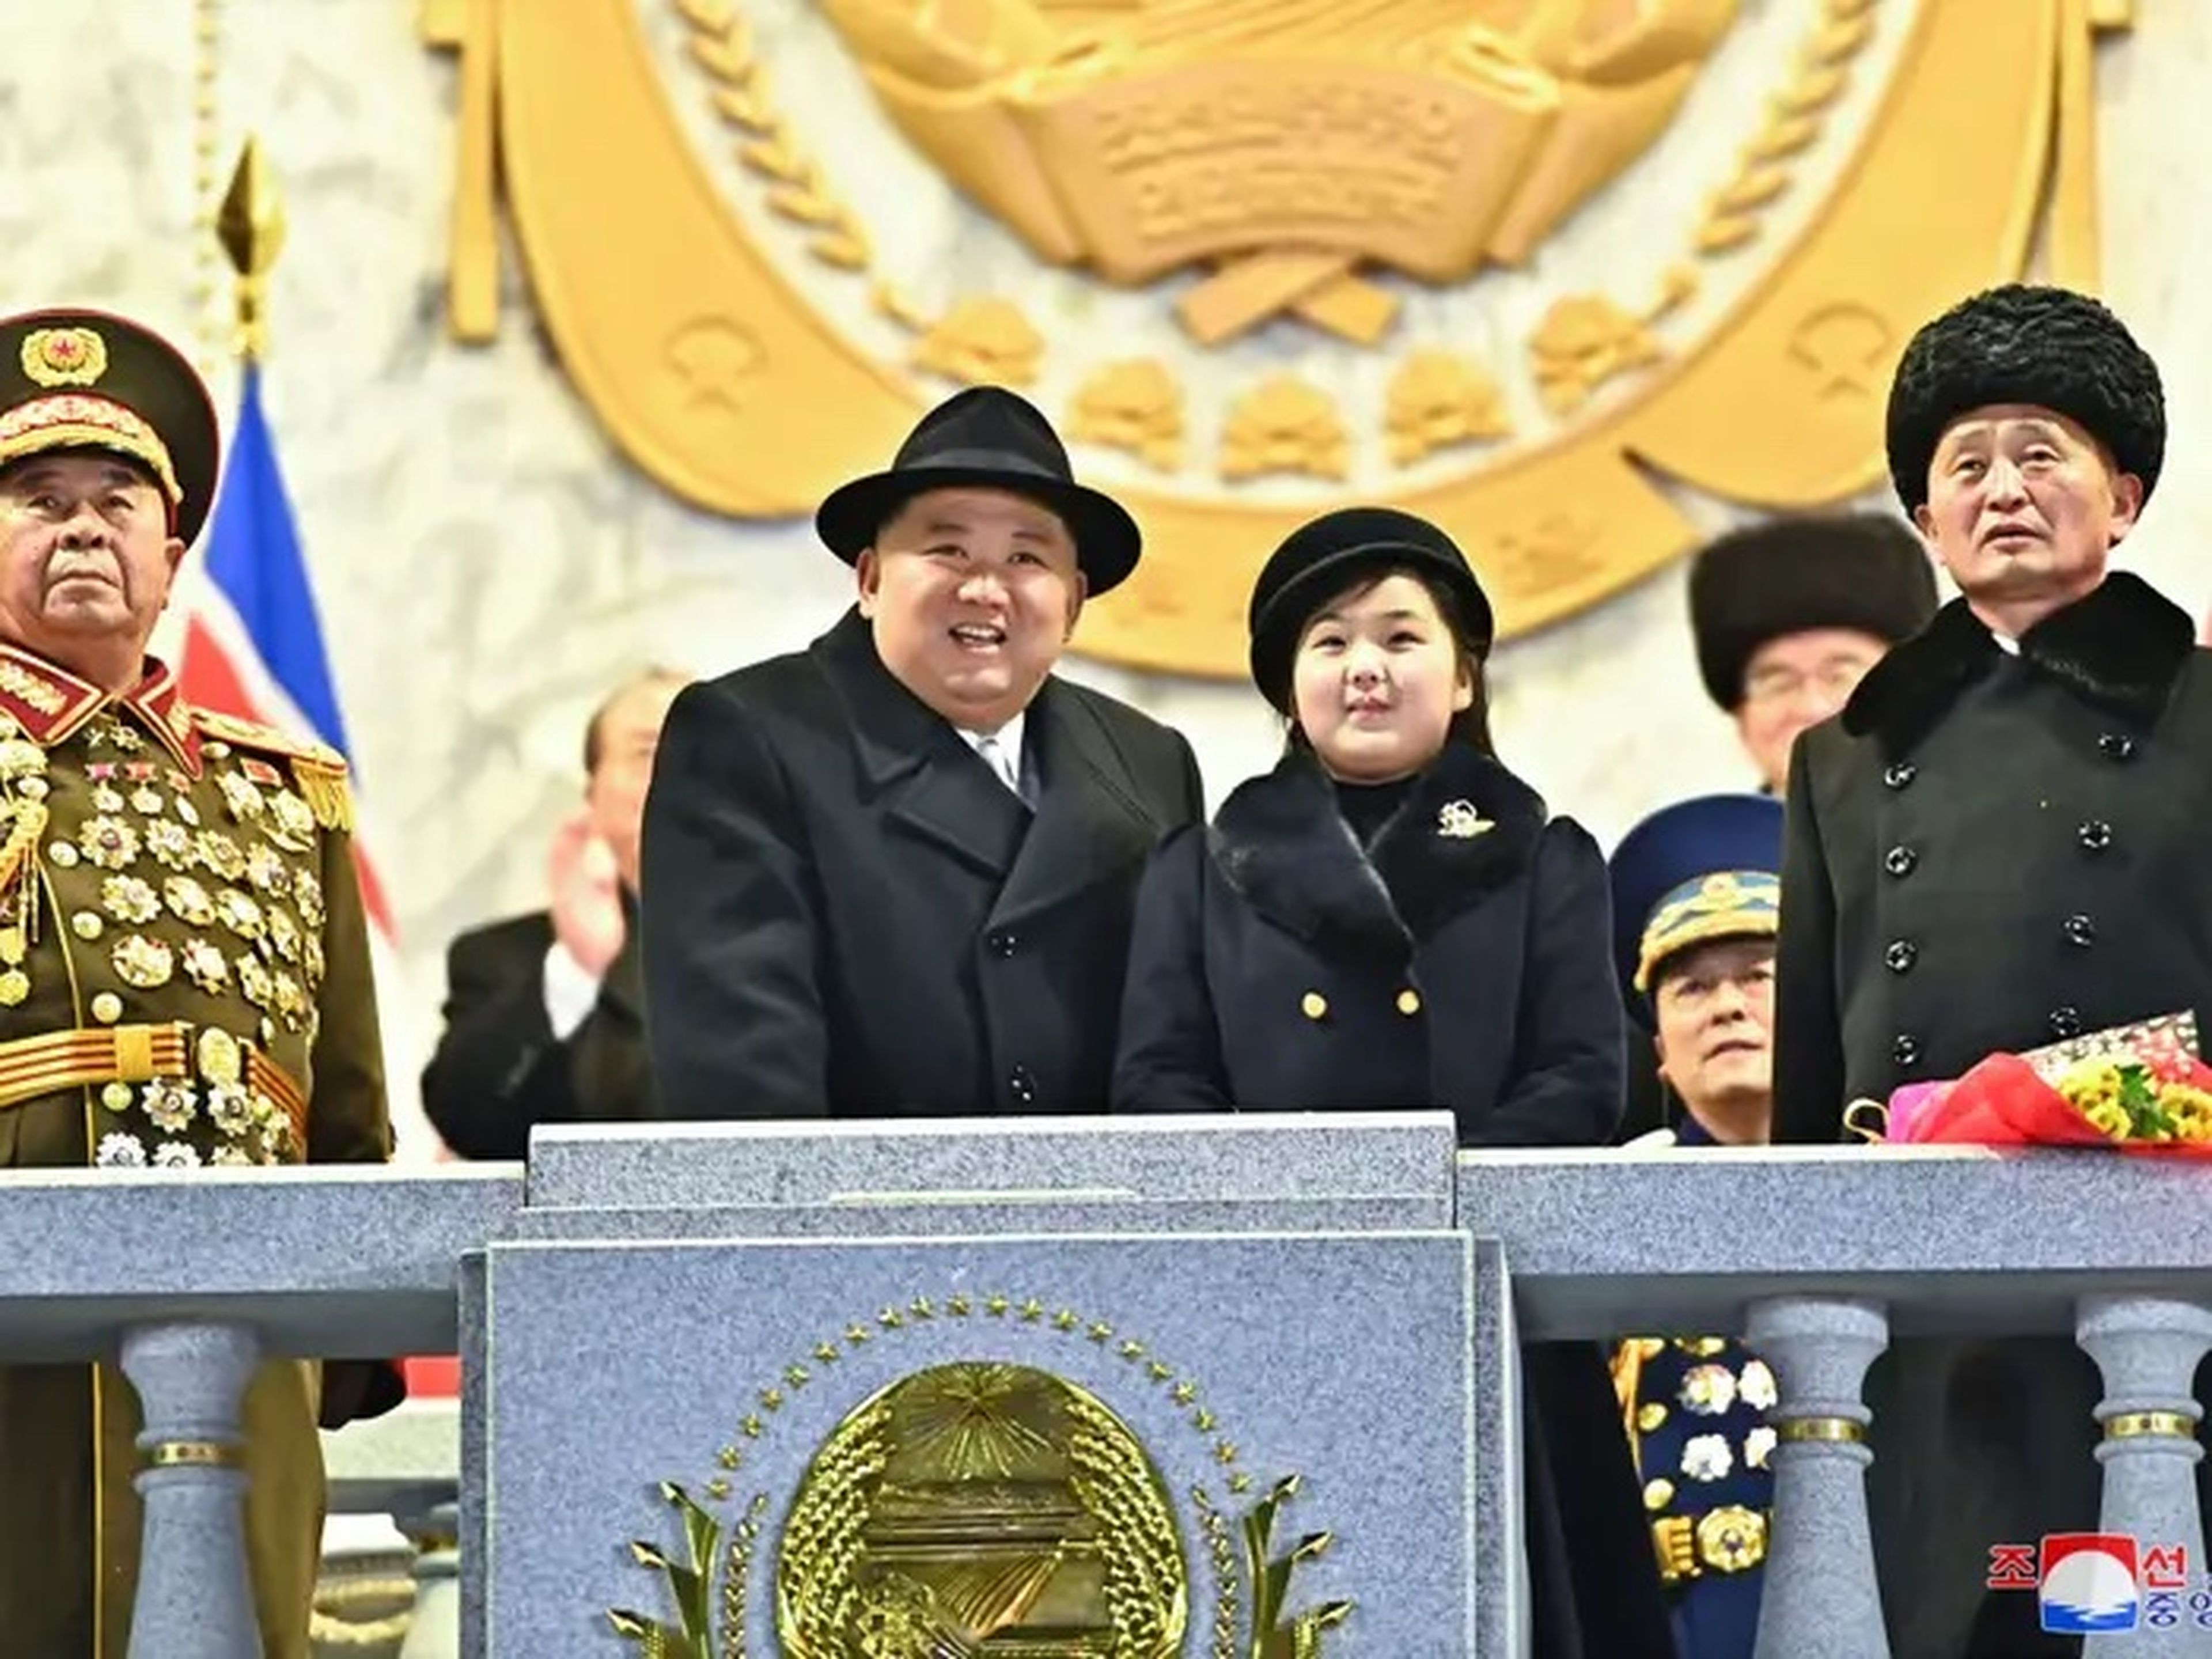 El líder norcoreano Kim Jong Un y su hija Kim Ju Ae asisten a un desfile militar.